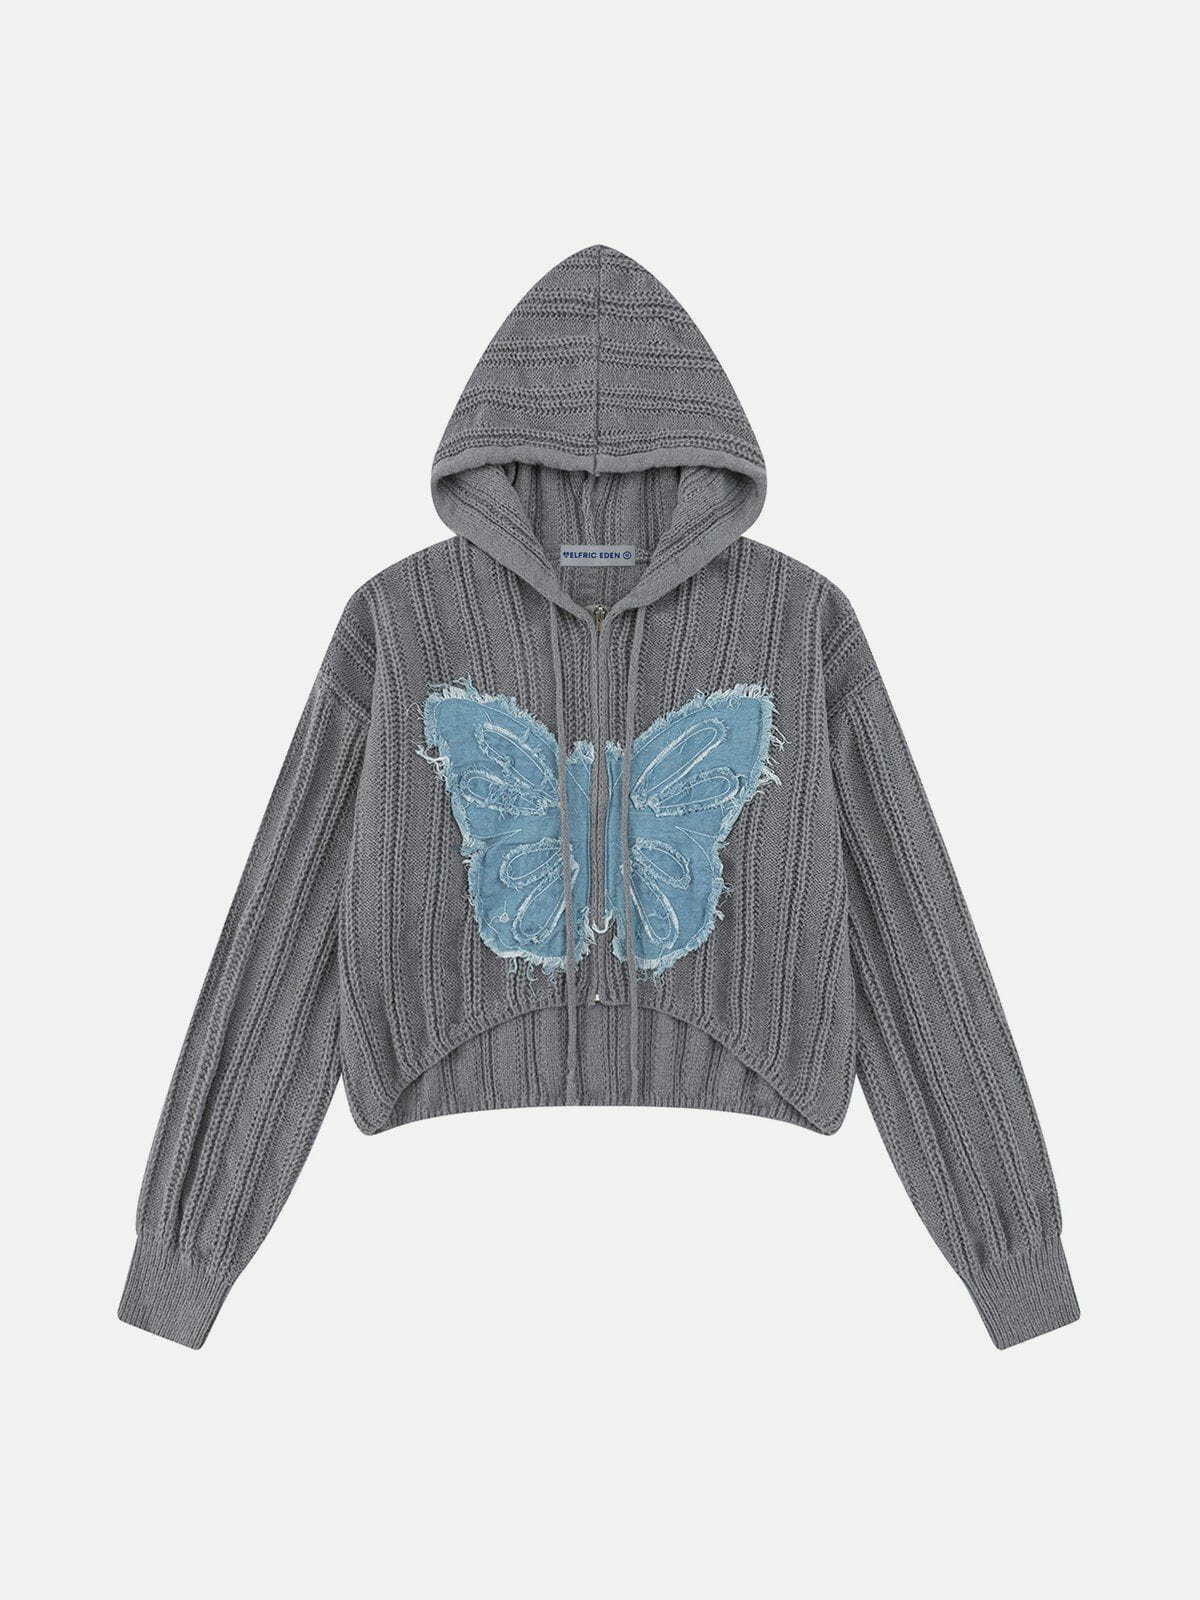 retro butterfly knit hoodie urban streetwear 4131